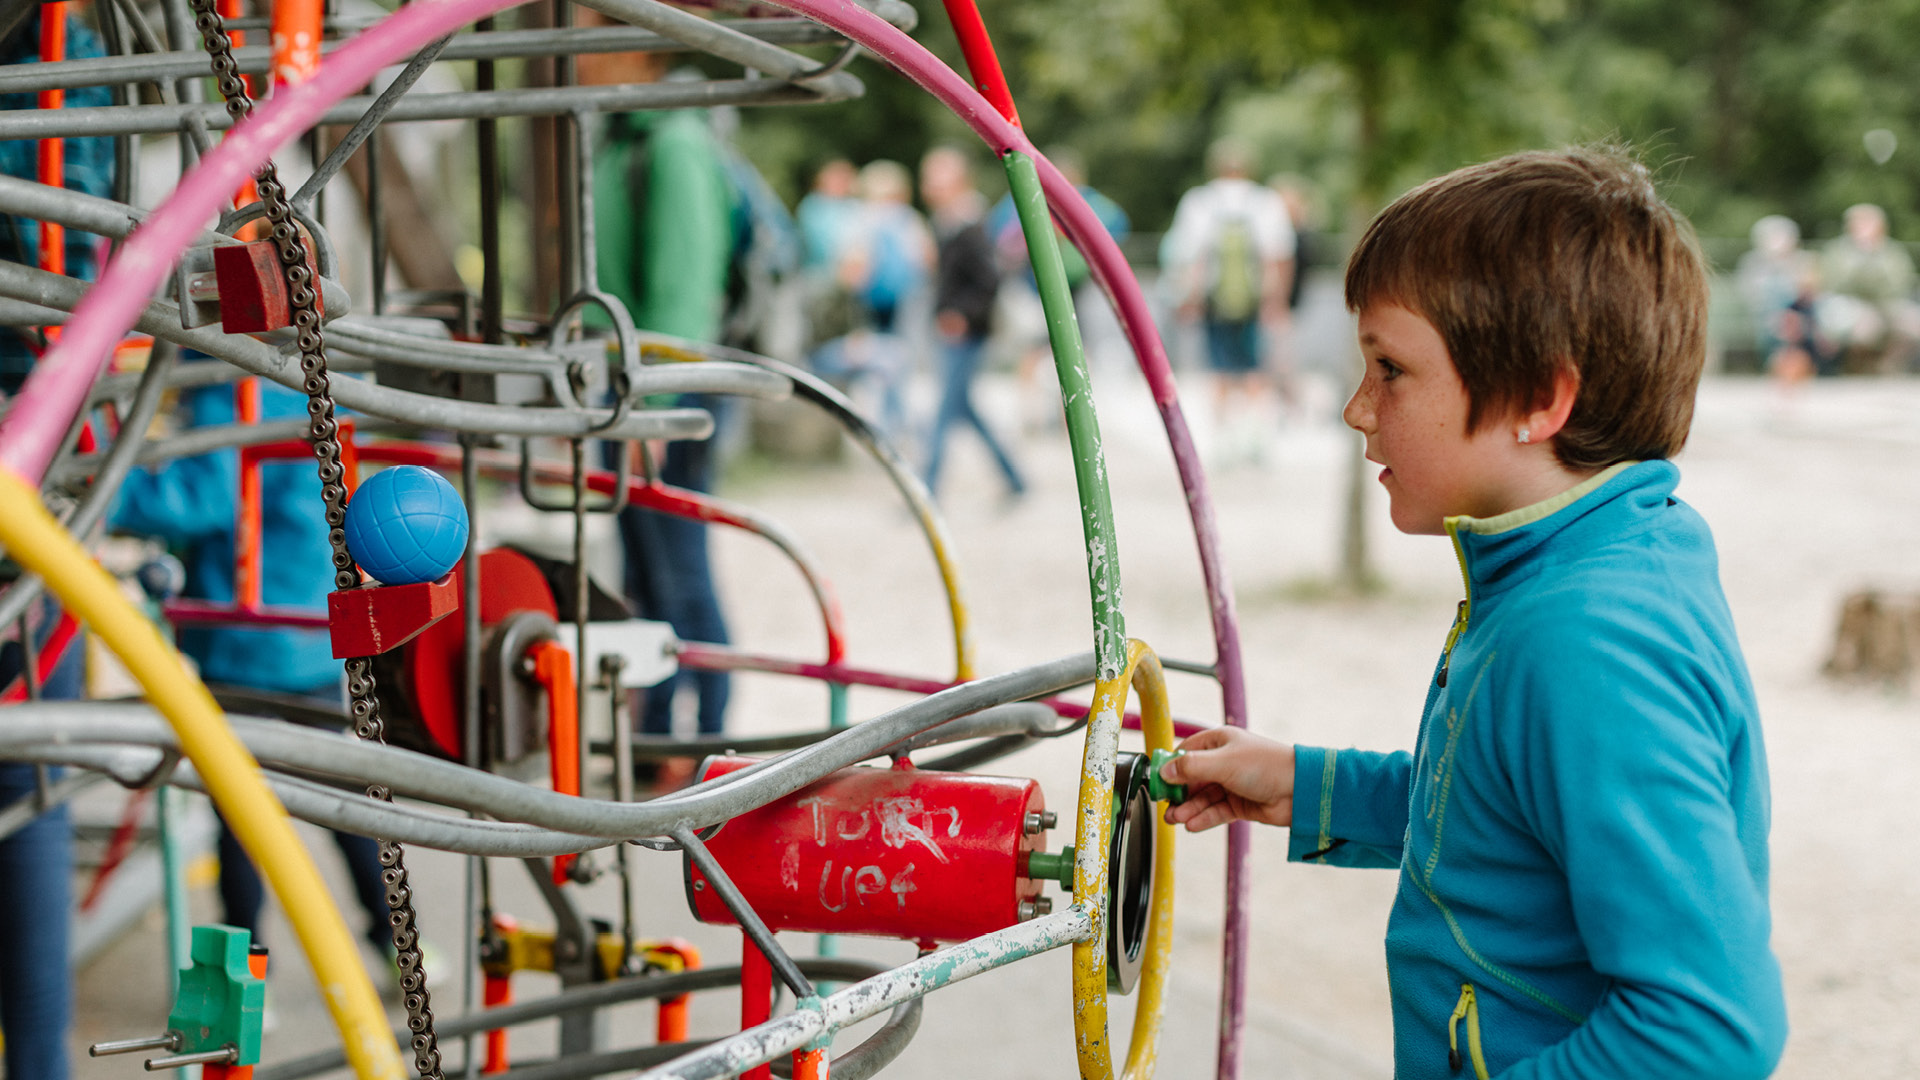 Ein Junge spielt vergnügt auf dem Spielplatz an der Kugelbahn.